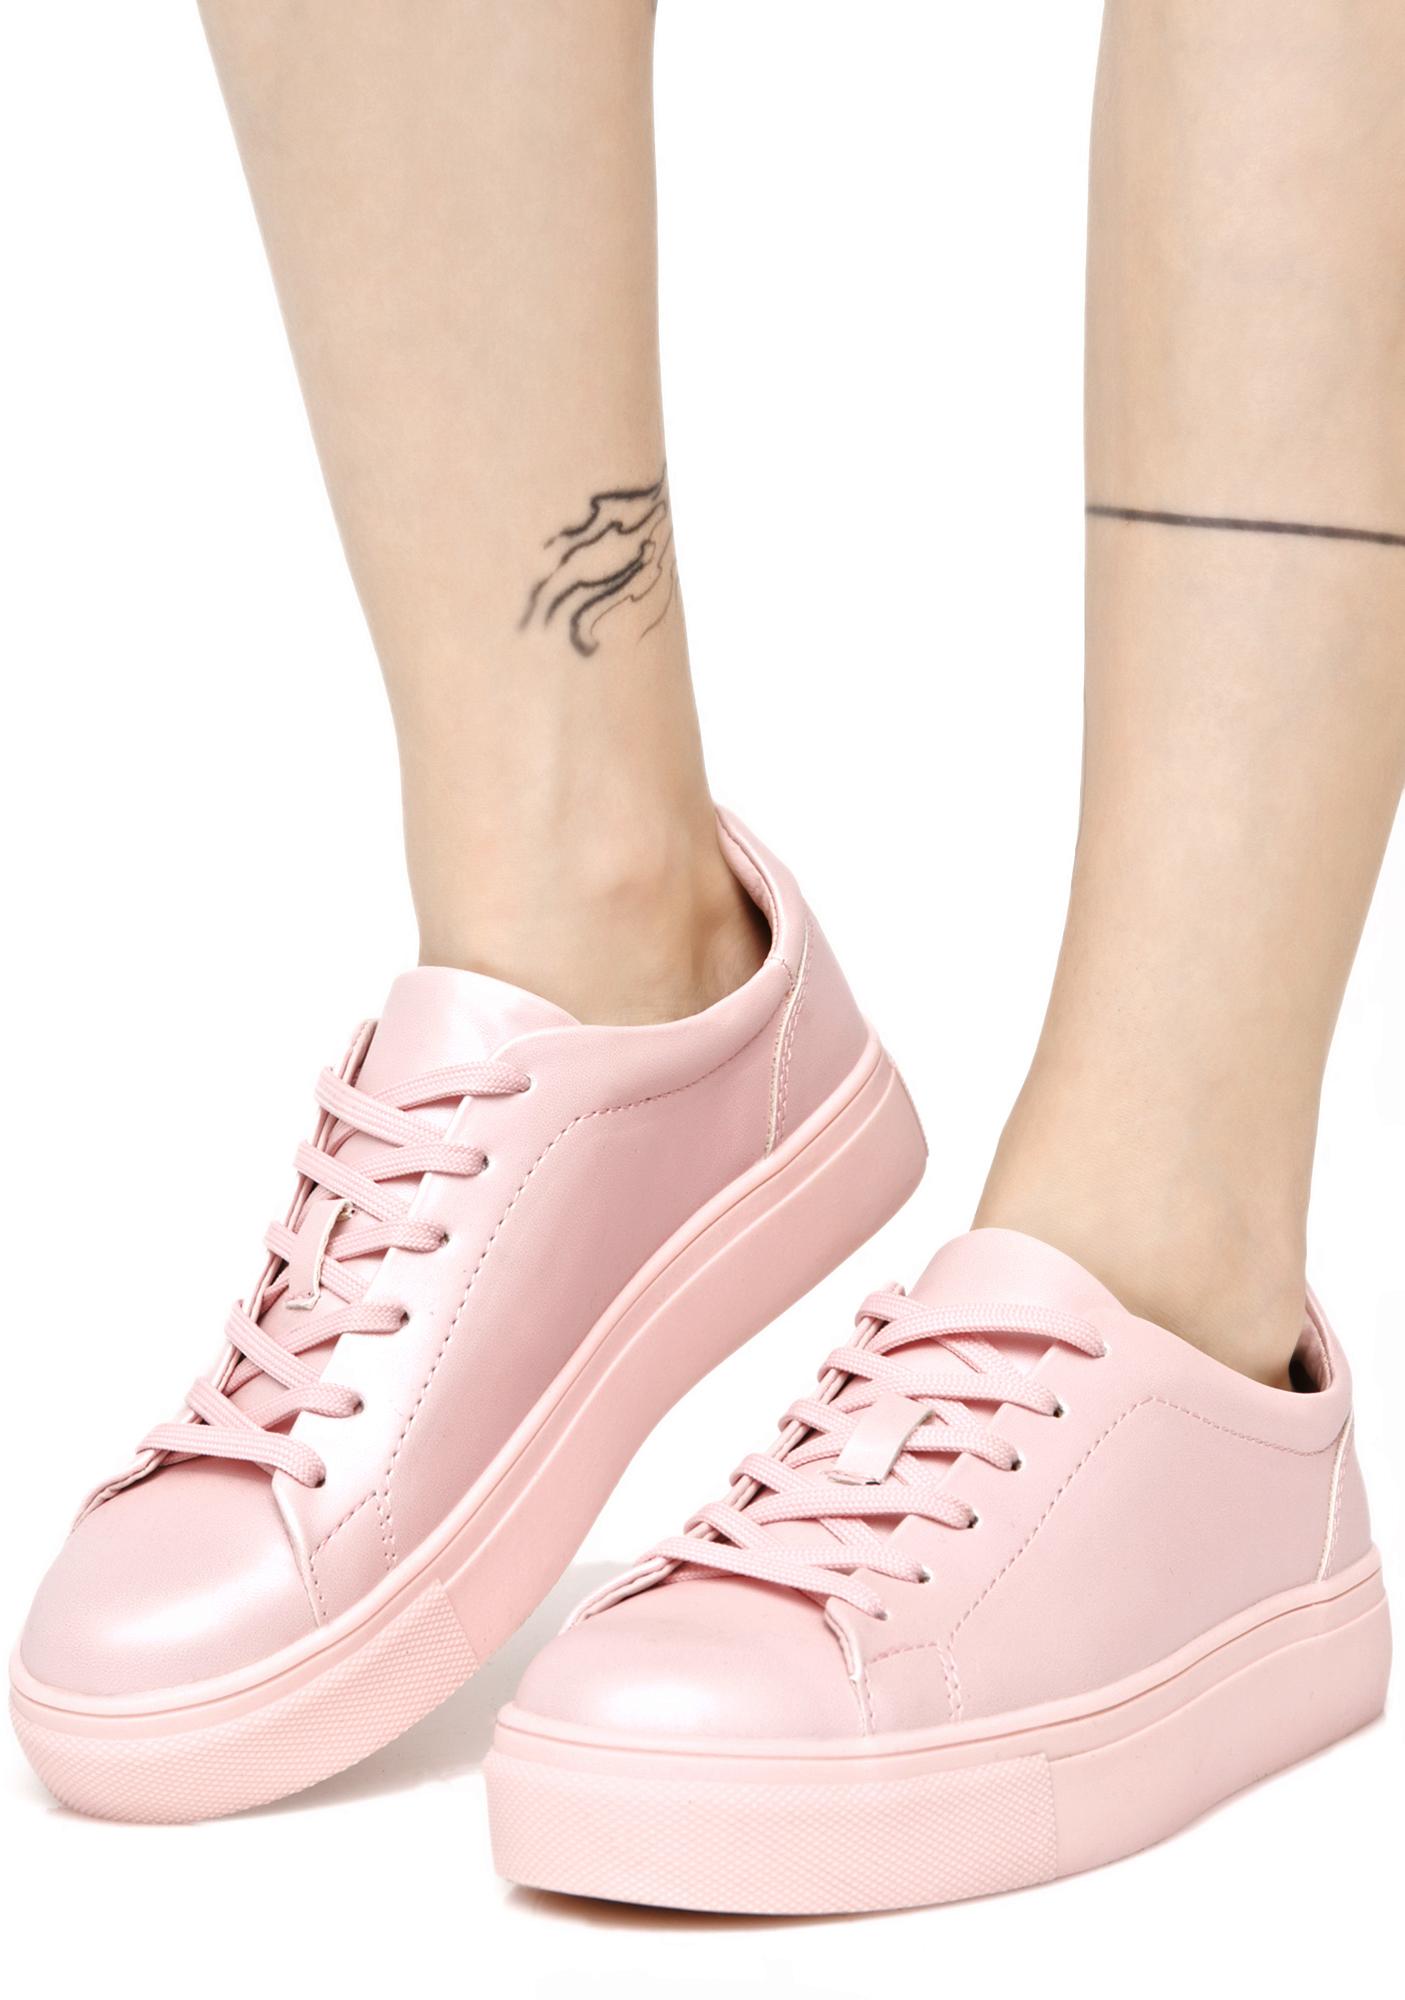 pastel pink tennis shoes